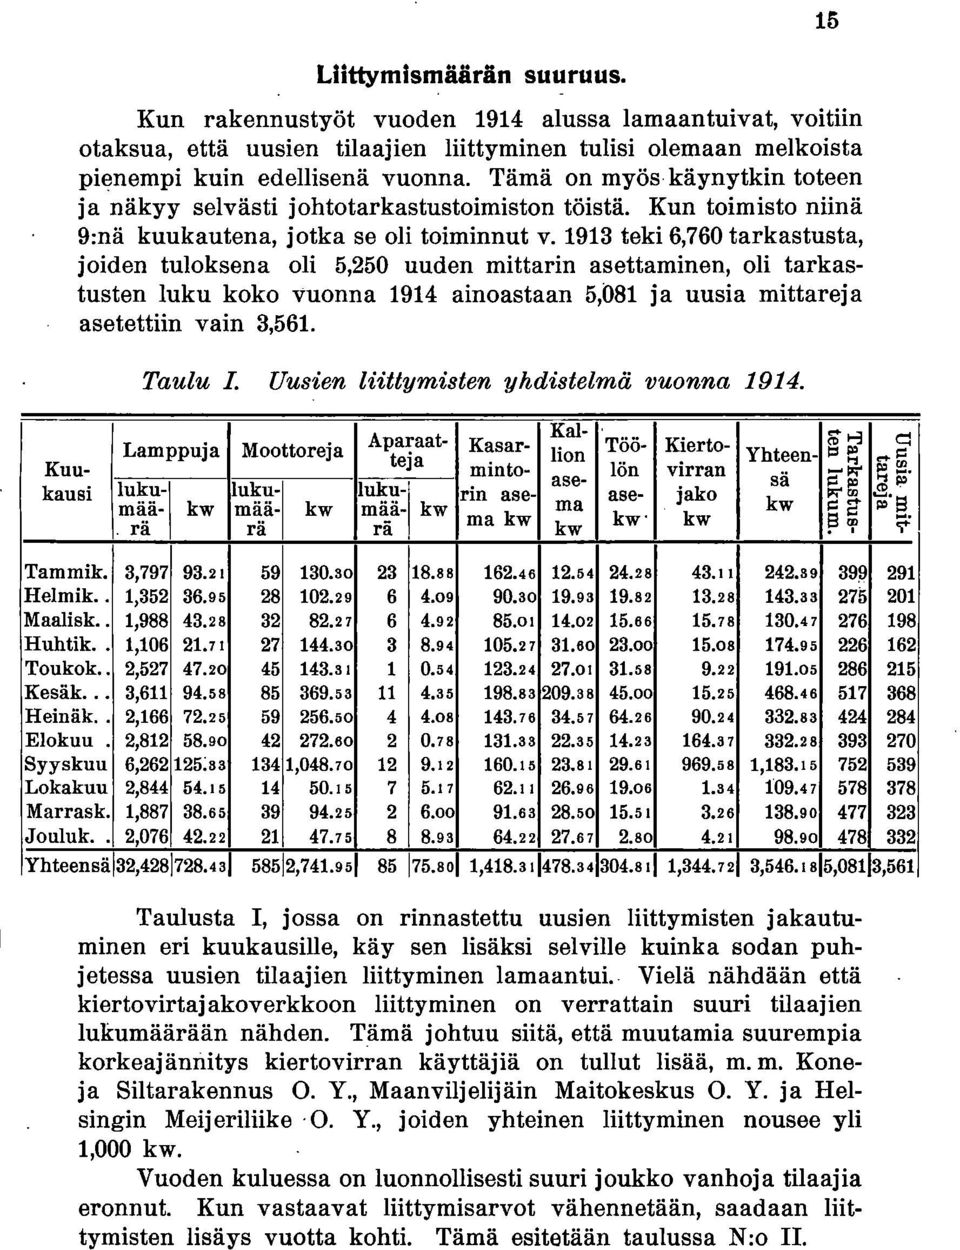 1913 teki 6,760 tarkastusta, joiden tuloksena oli 5,250 uuden mittarin asettaminen, oli tarkastusten luku koko vuonna 1914 ainoastaan 5,081 ja uusia mittareja asetettiin vain 3,561.